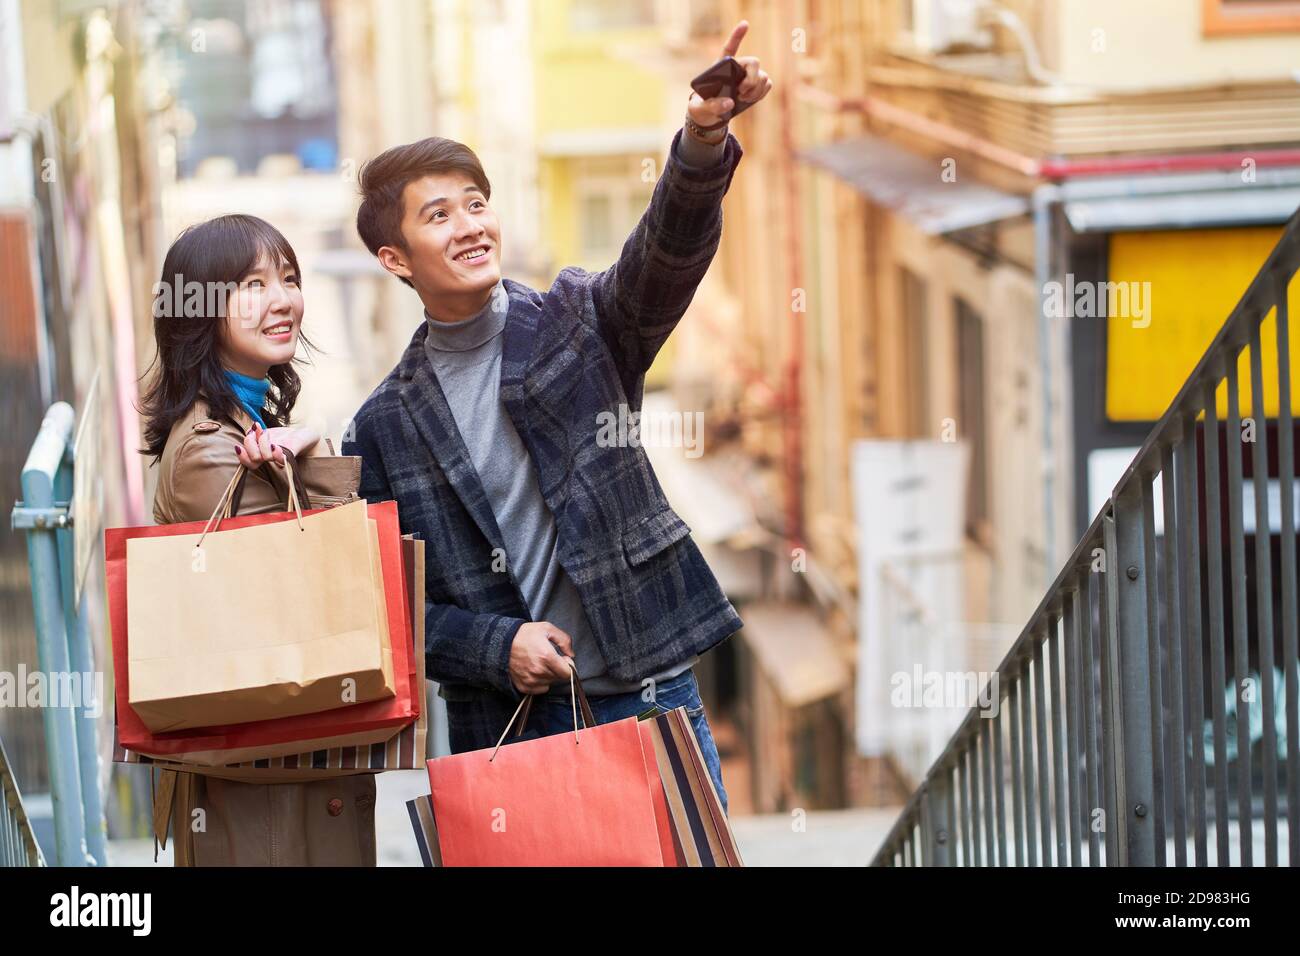 un jeune couple asiatique heureux se lance dans une frénésie de shopping Banque D'Images